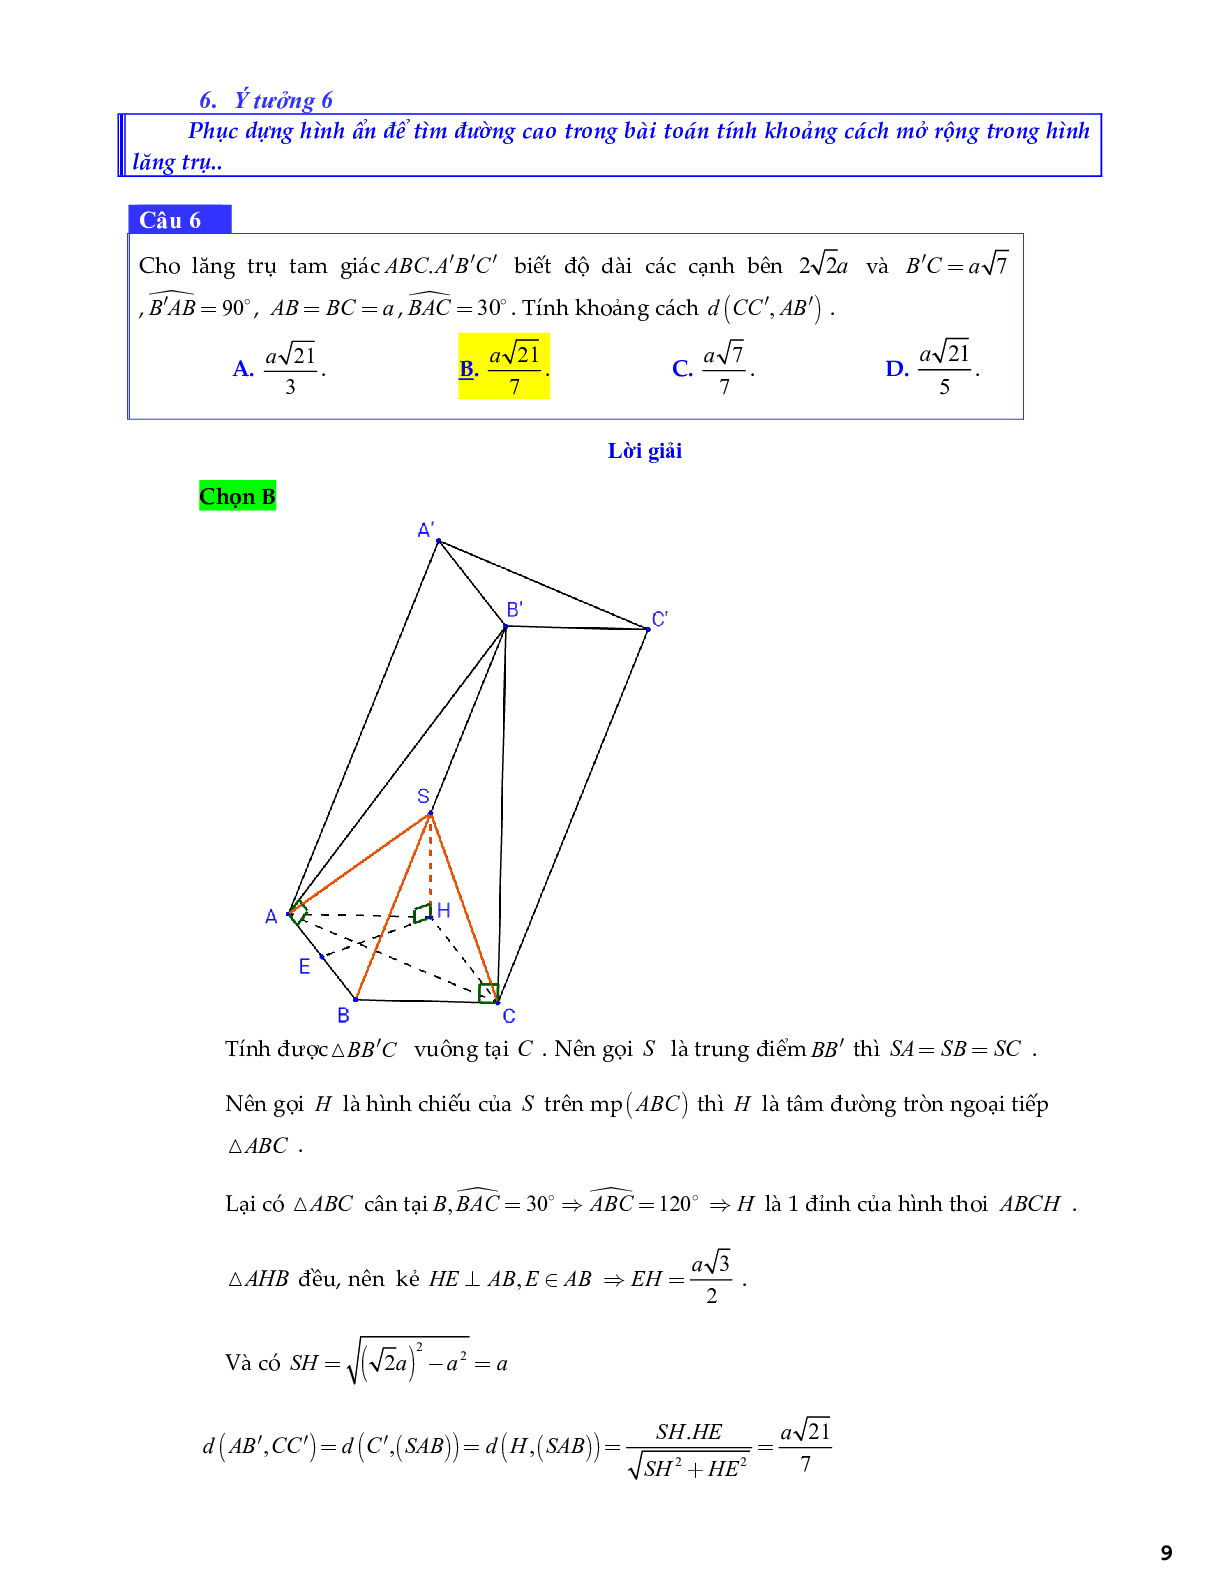 Bài toán góc và khoảng cách trong đề tham khảo THPTQG 2020 môn Toán (trang 9)